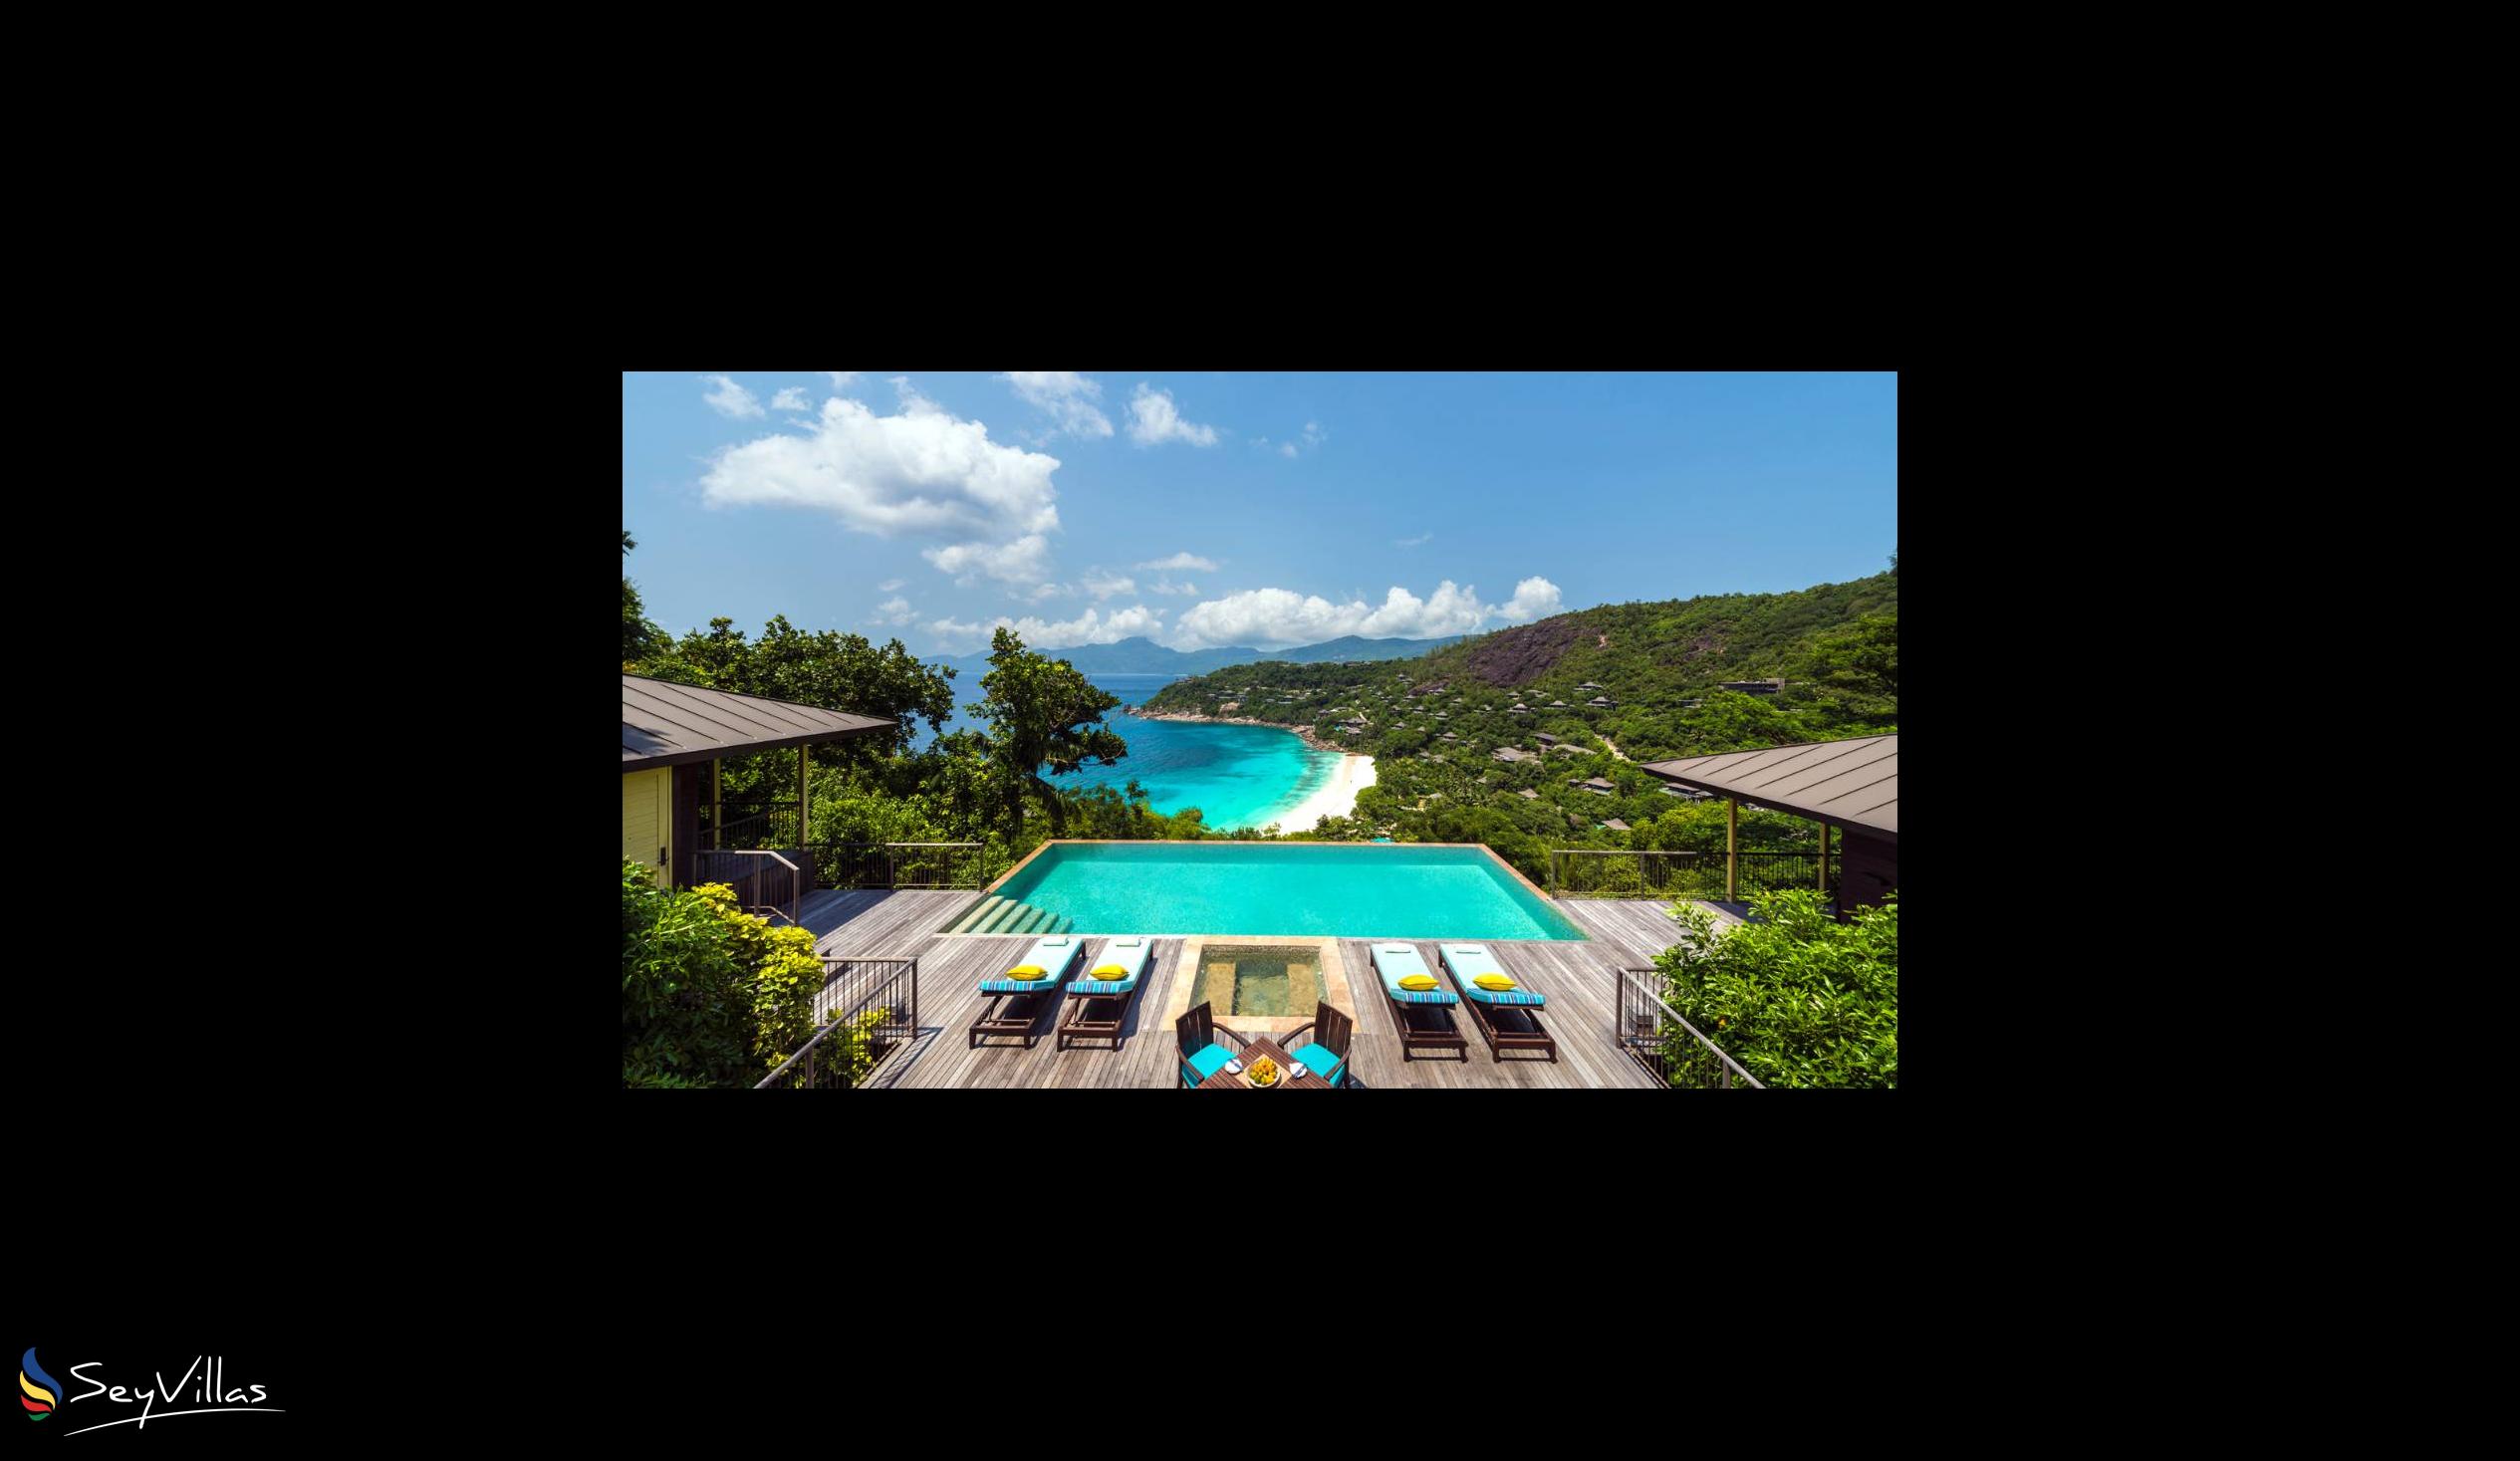 Foto 26: Four Seasons Resort - 2-Bedroom Hilltop Ocean View Suite - Mahé (Seychellen)